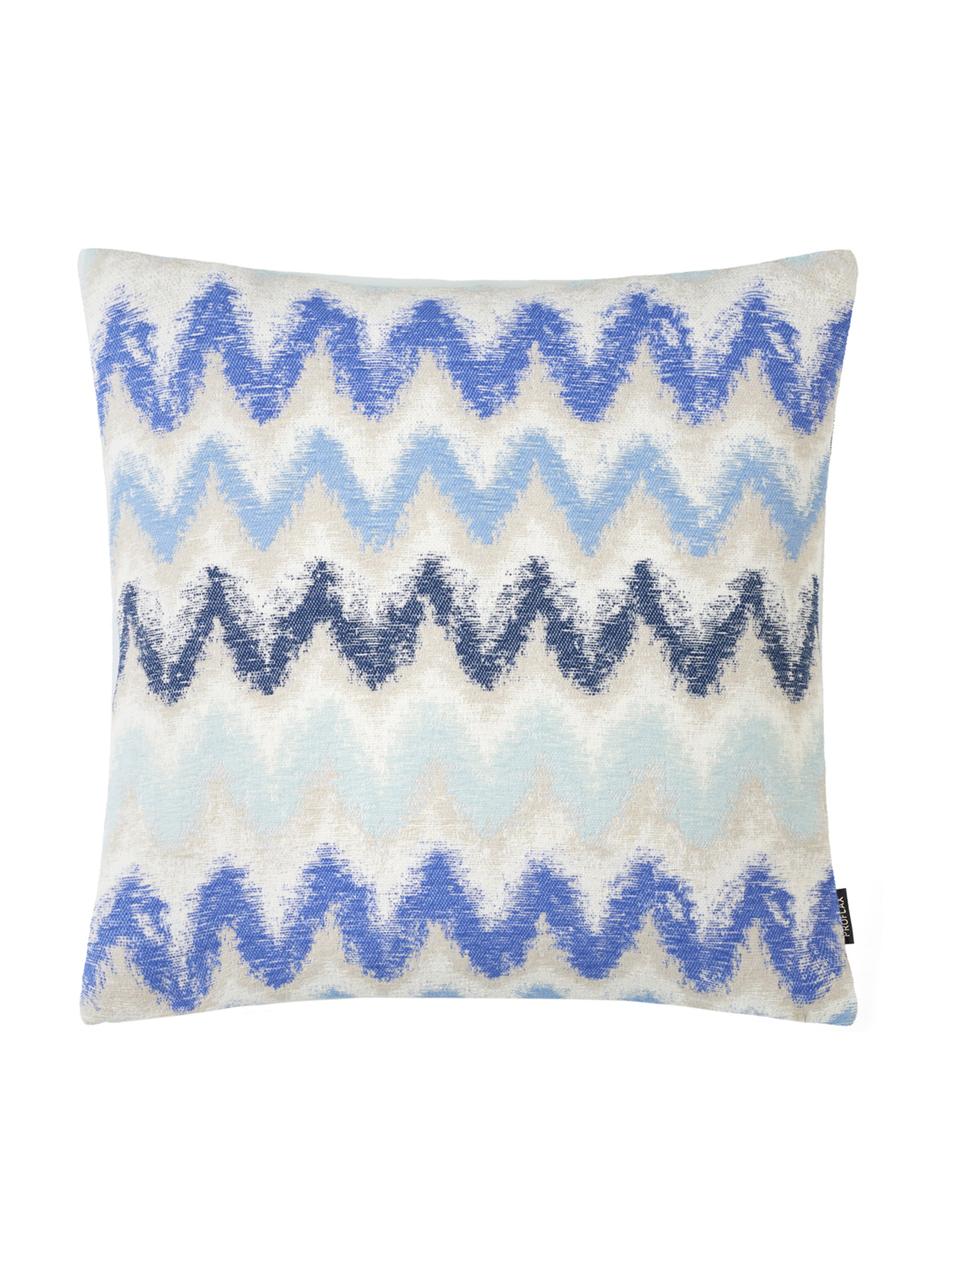 Kussenhoes Pari met zigzag patroon, Polyester, Lichtbeige, blauwtinten, 45 x 45 cm